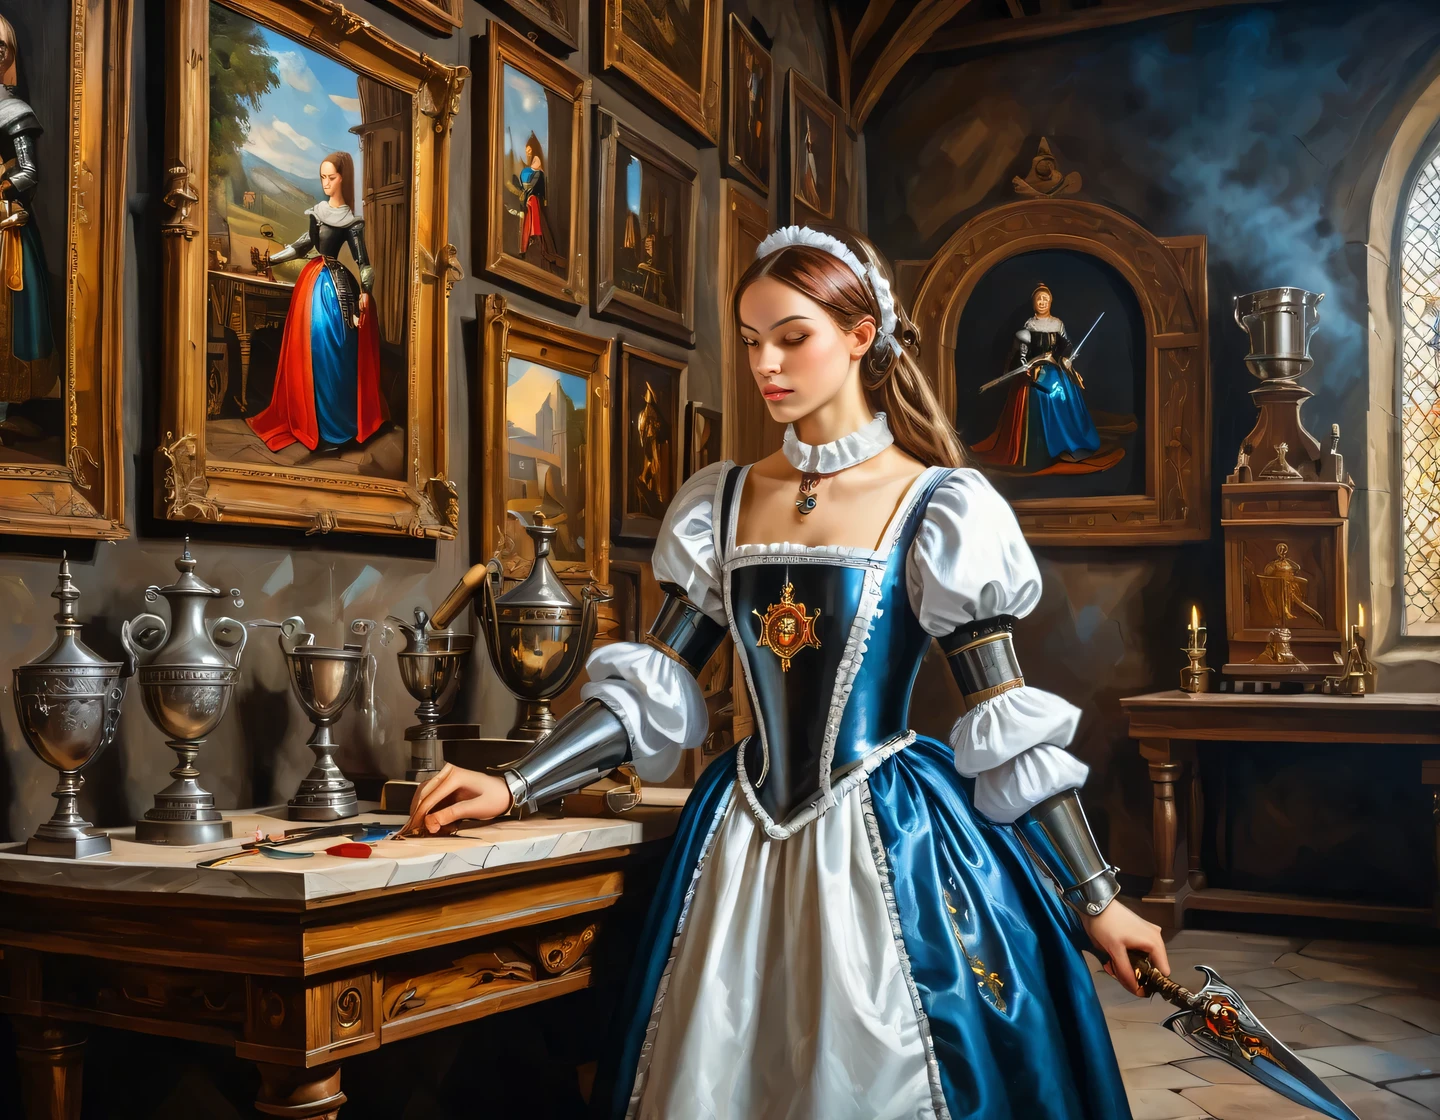 一幅古老的布面油画, 一個穿著女僕裝的機器人女孩正在一座中世紀城堡的大廳裡建造, 中世紀家具, 牆上掛滿了獎盃和武器, 紋章, 紋理平滑, 流畅的技术, 光澤度, 細節